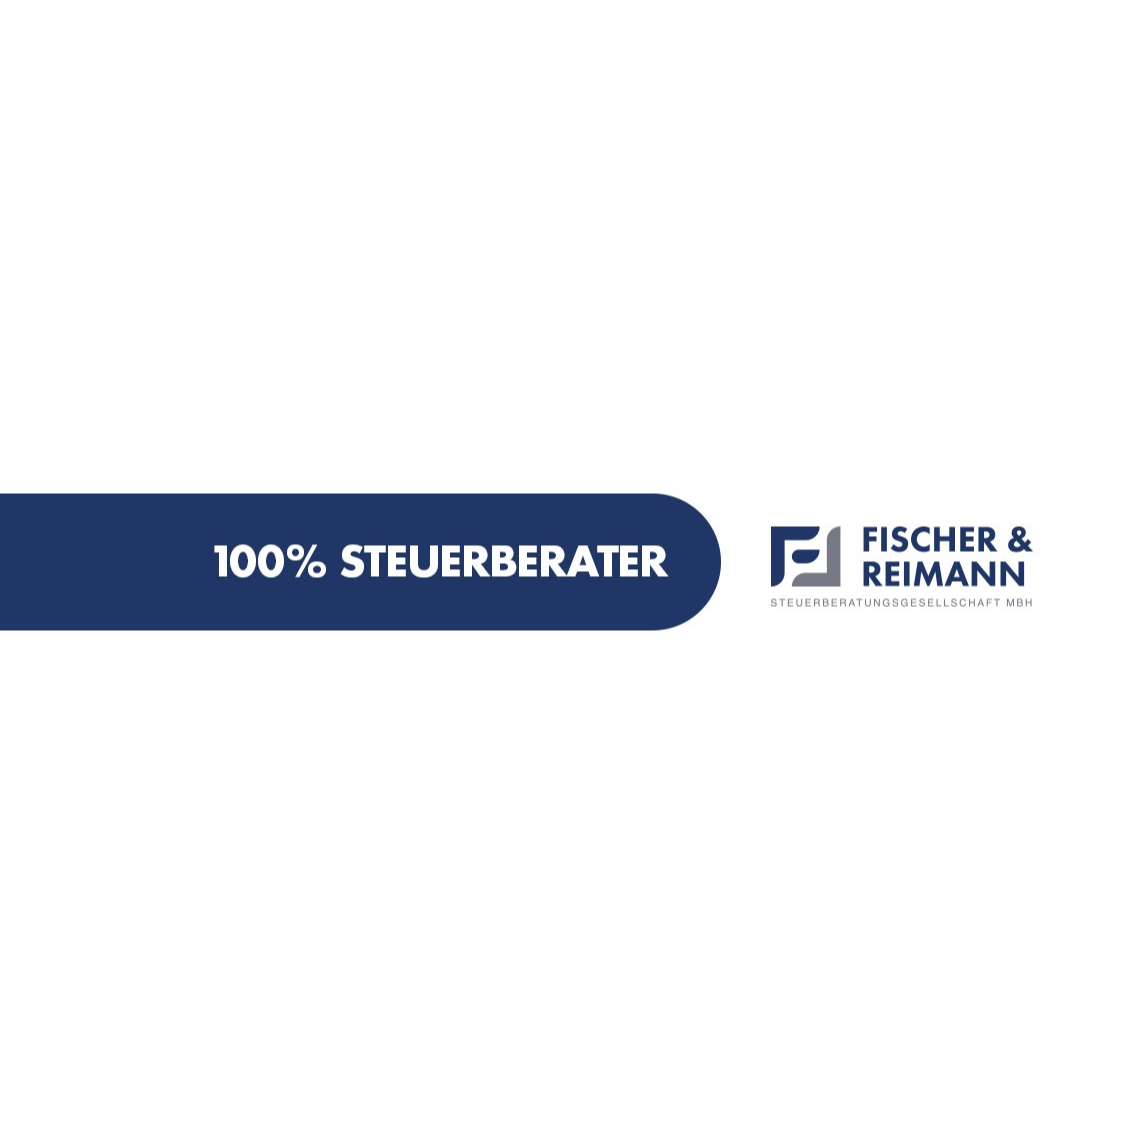 Fischer & Reimann Steuerberatungsgesellschaft mbH in Ludwigshafen am Rhein - Logo